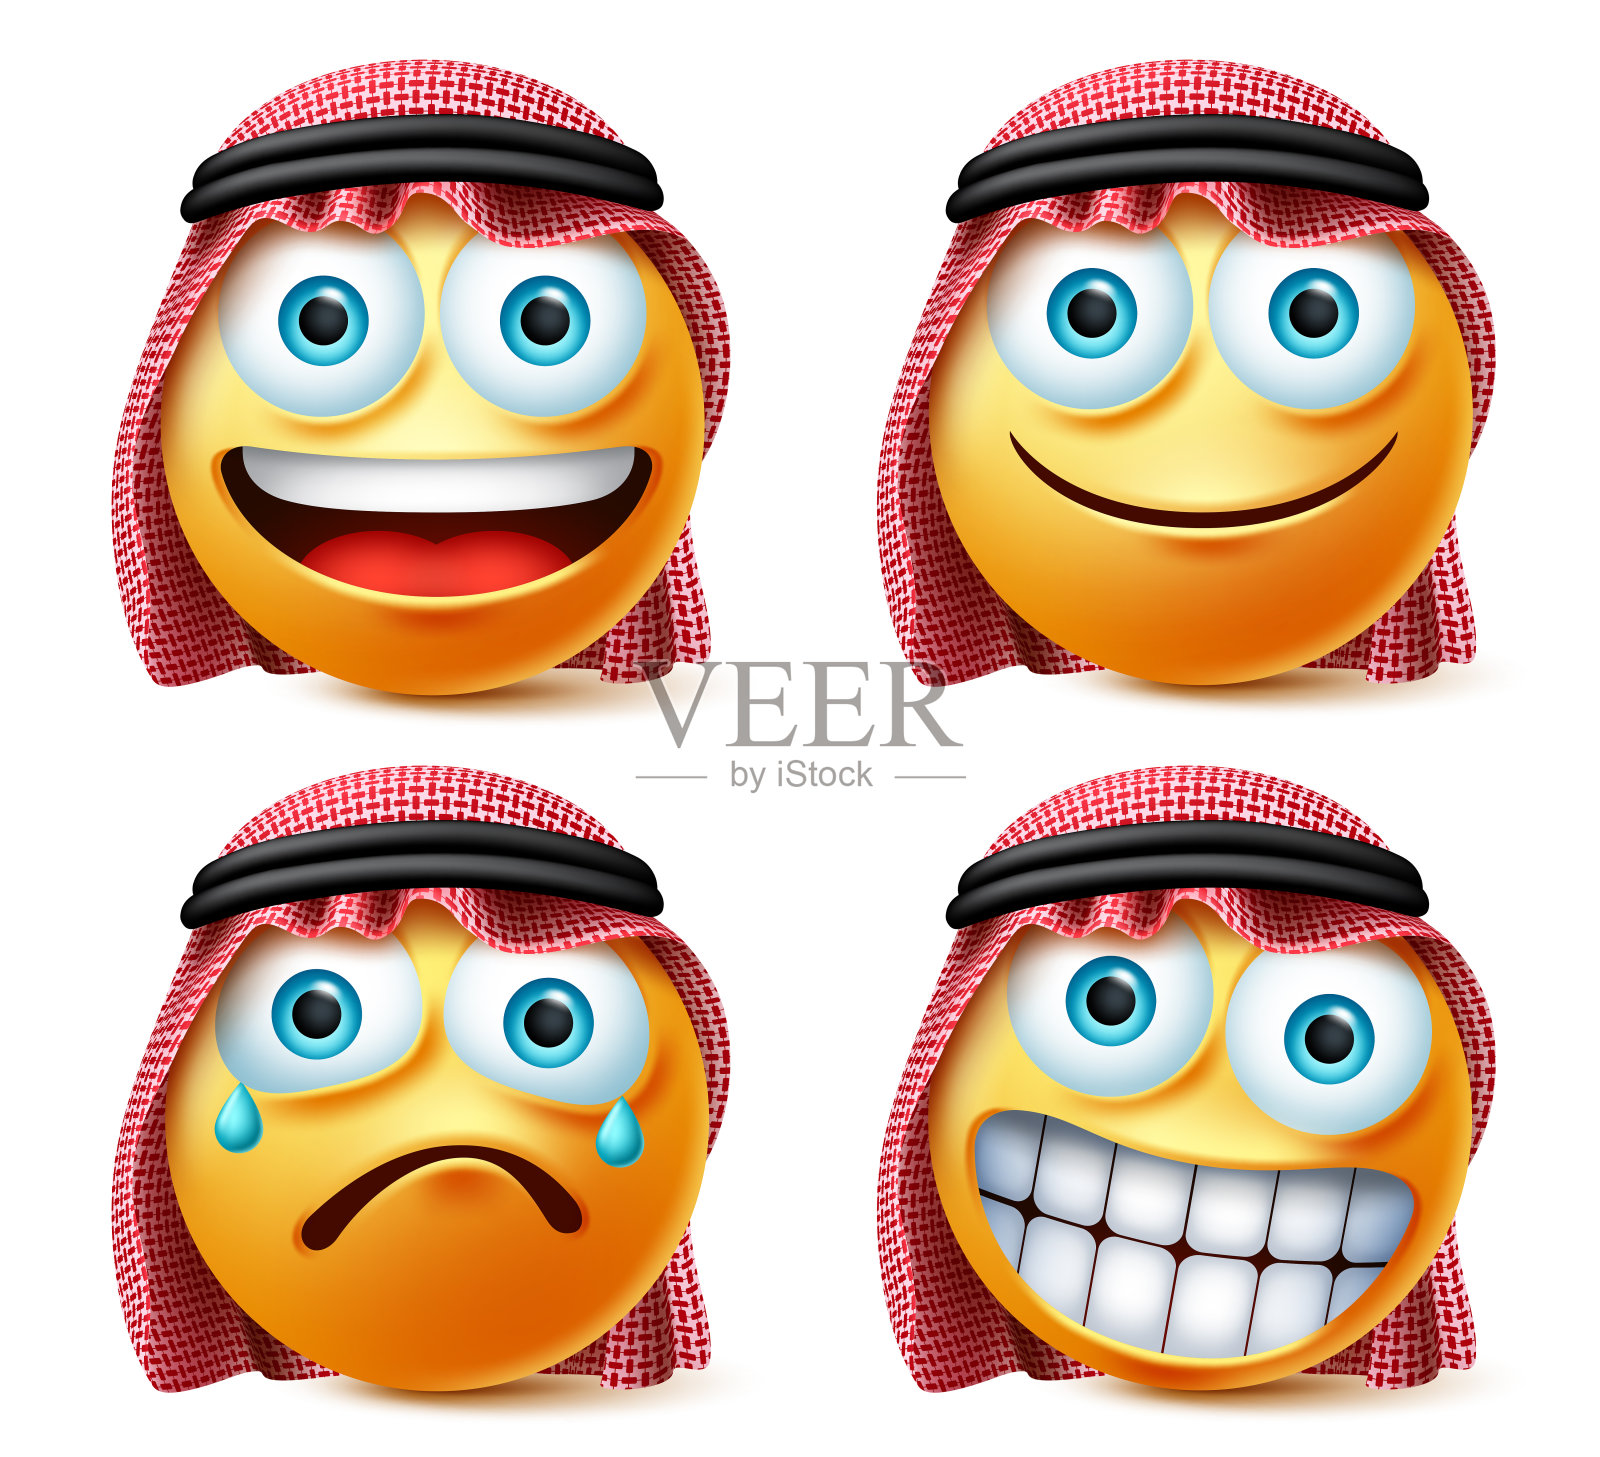 沙特阿拉伯表情符号和表情向量集。沙特阿拉伯的表情符号。插画图片素材